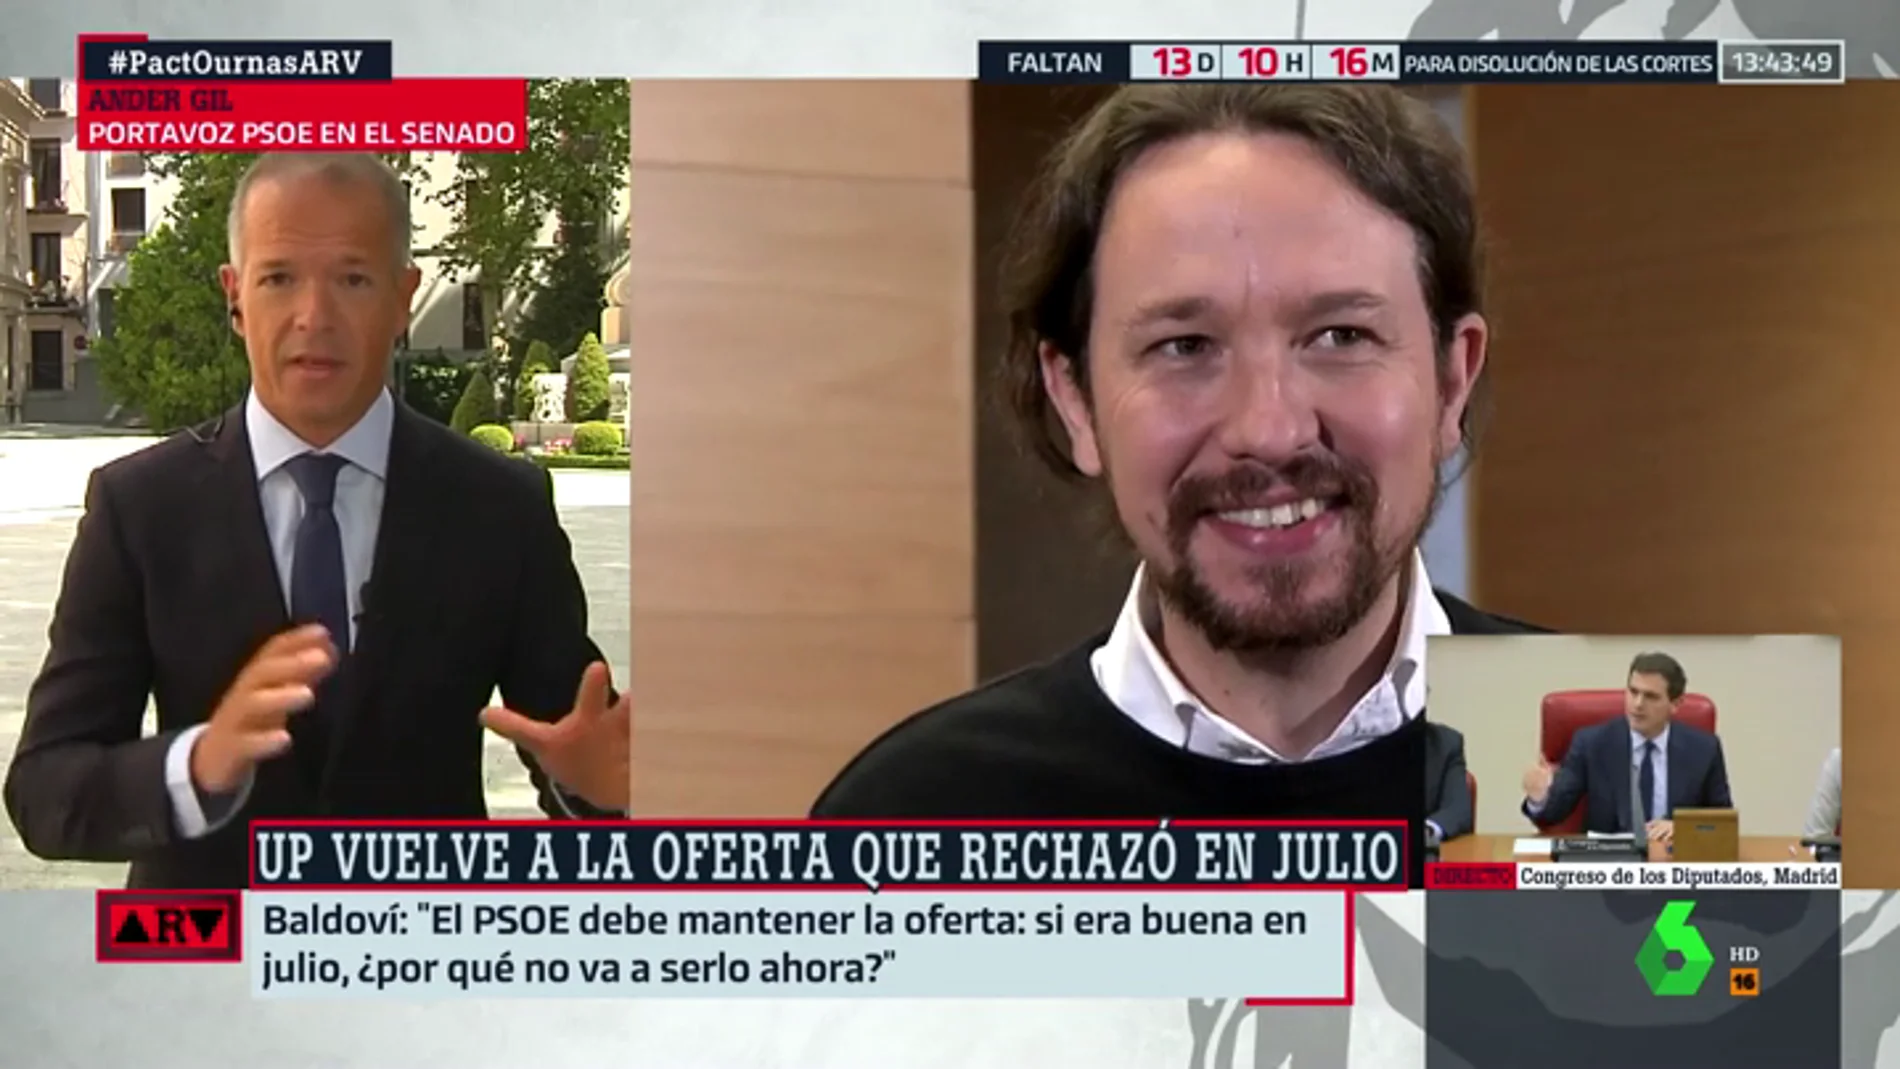 Ander Gil (PSOE): "Fuimos sinceros cuando dijimos que la oferta de julio no se repetiría"